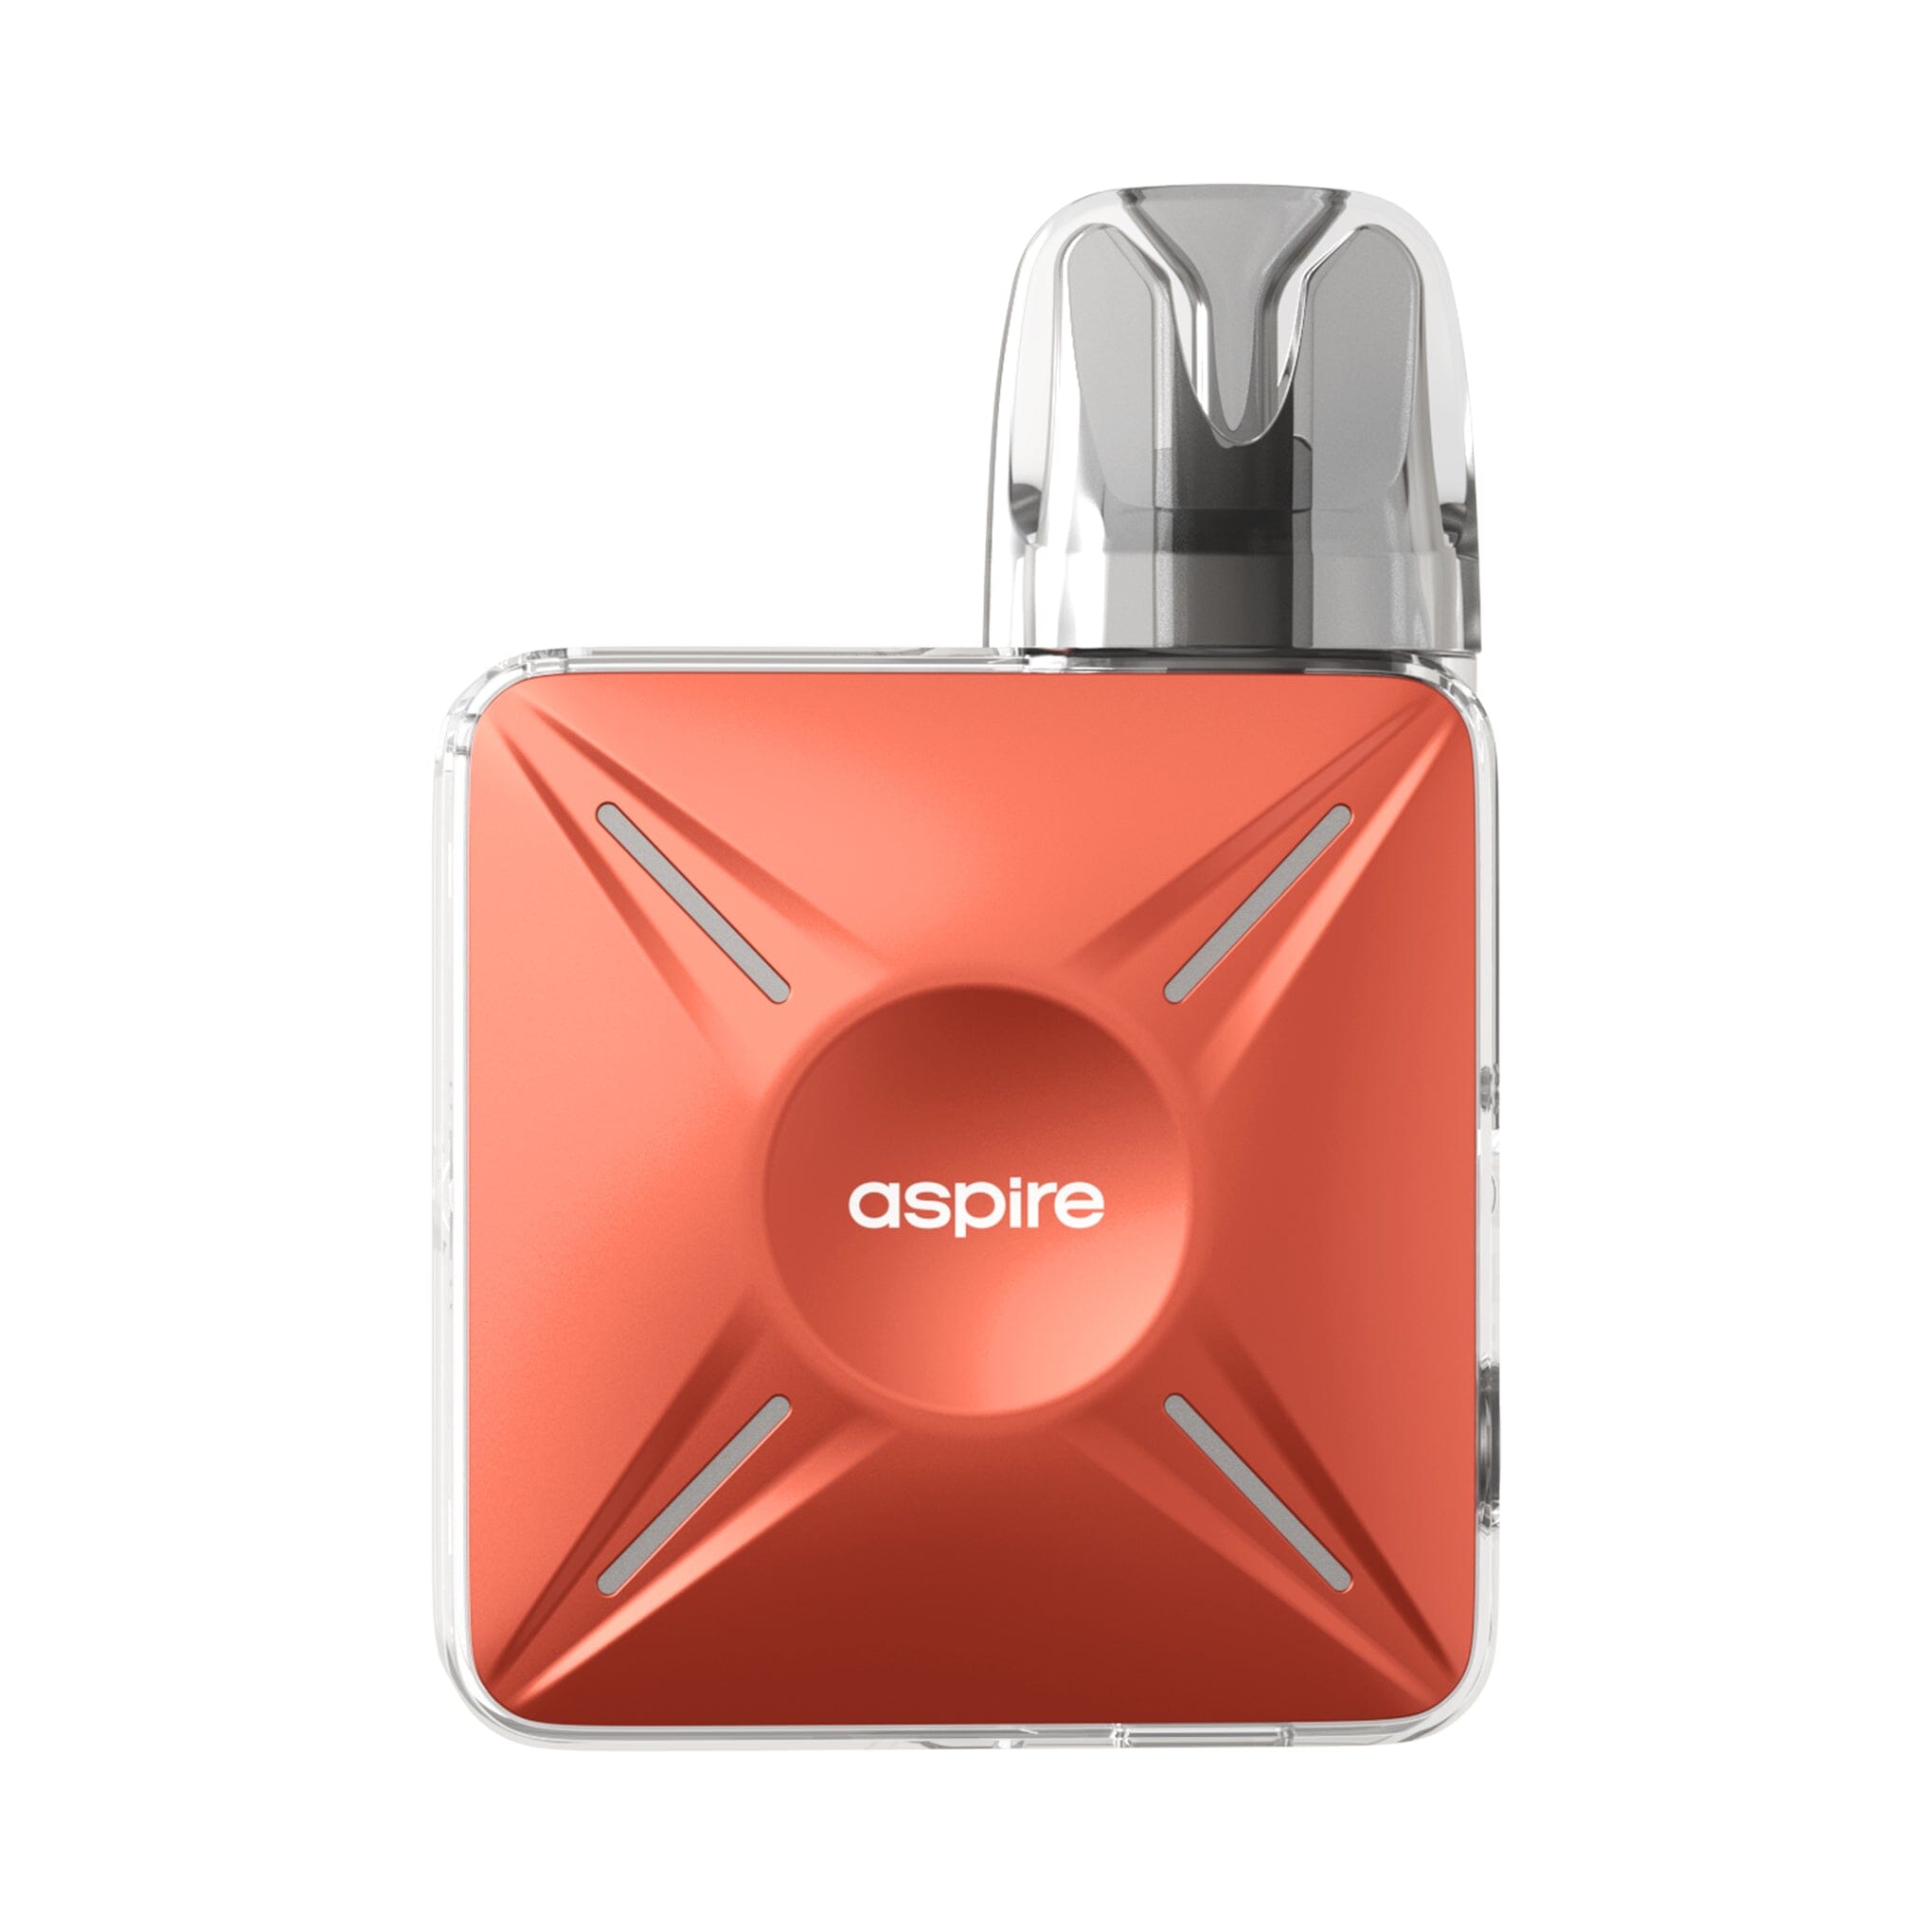 Aspire Cyber X Kit Coral Orange 